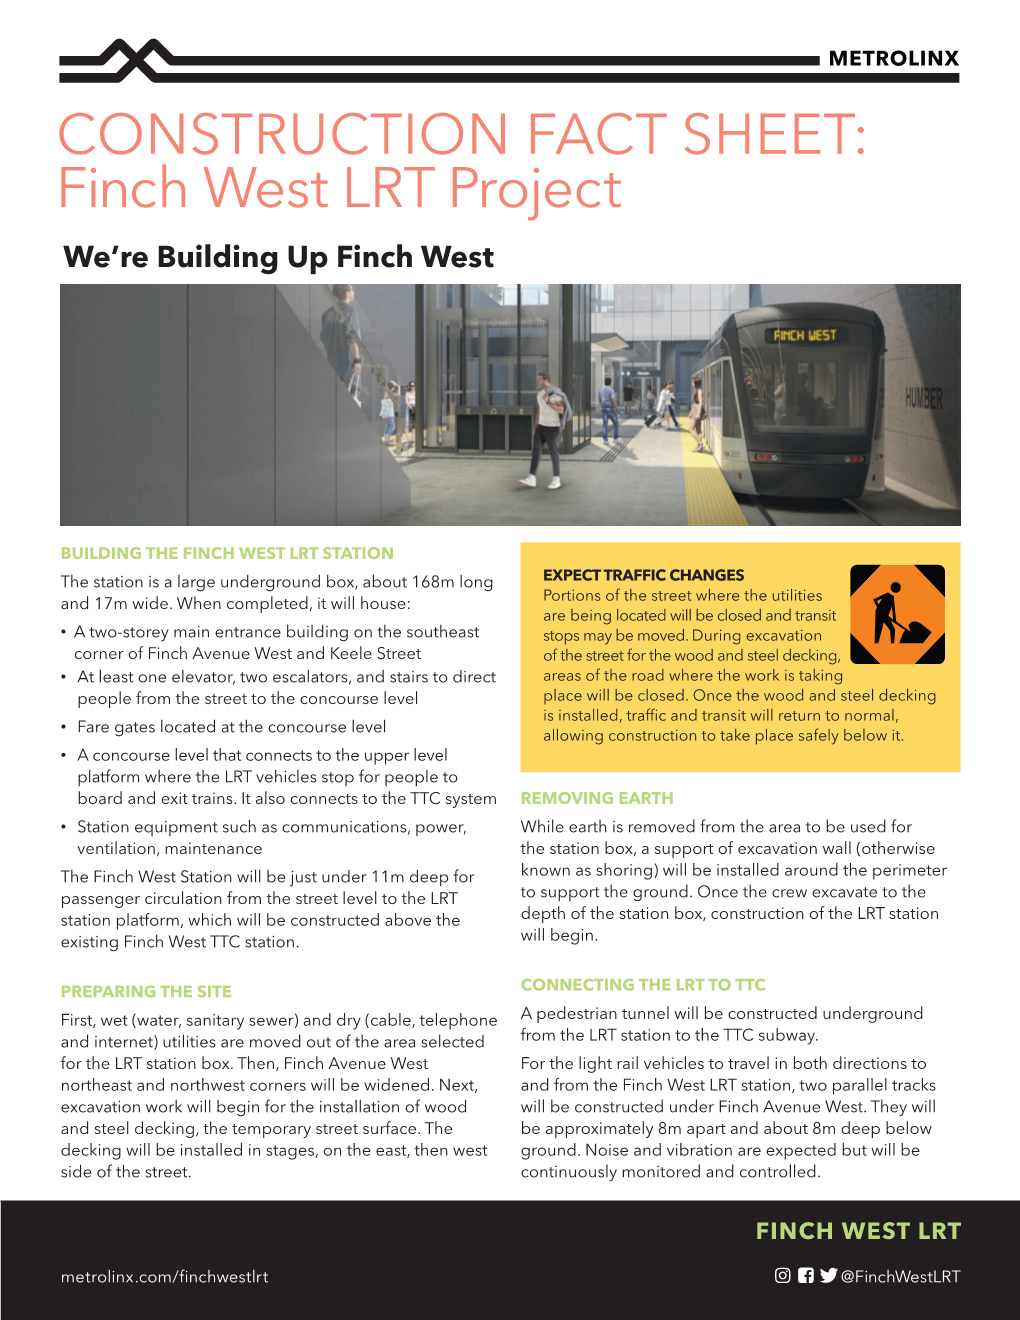 Finch West LRT Project Construction Fact Sheet